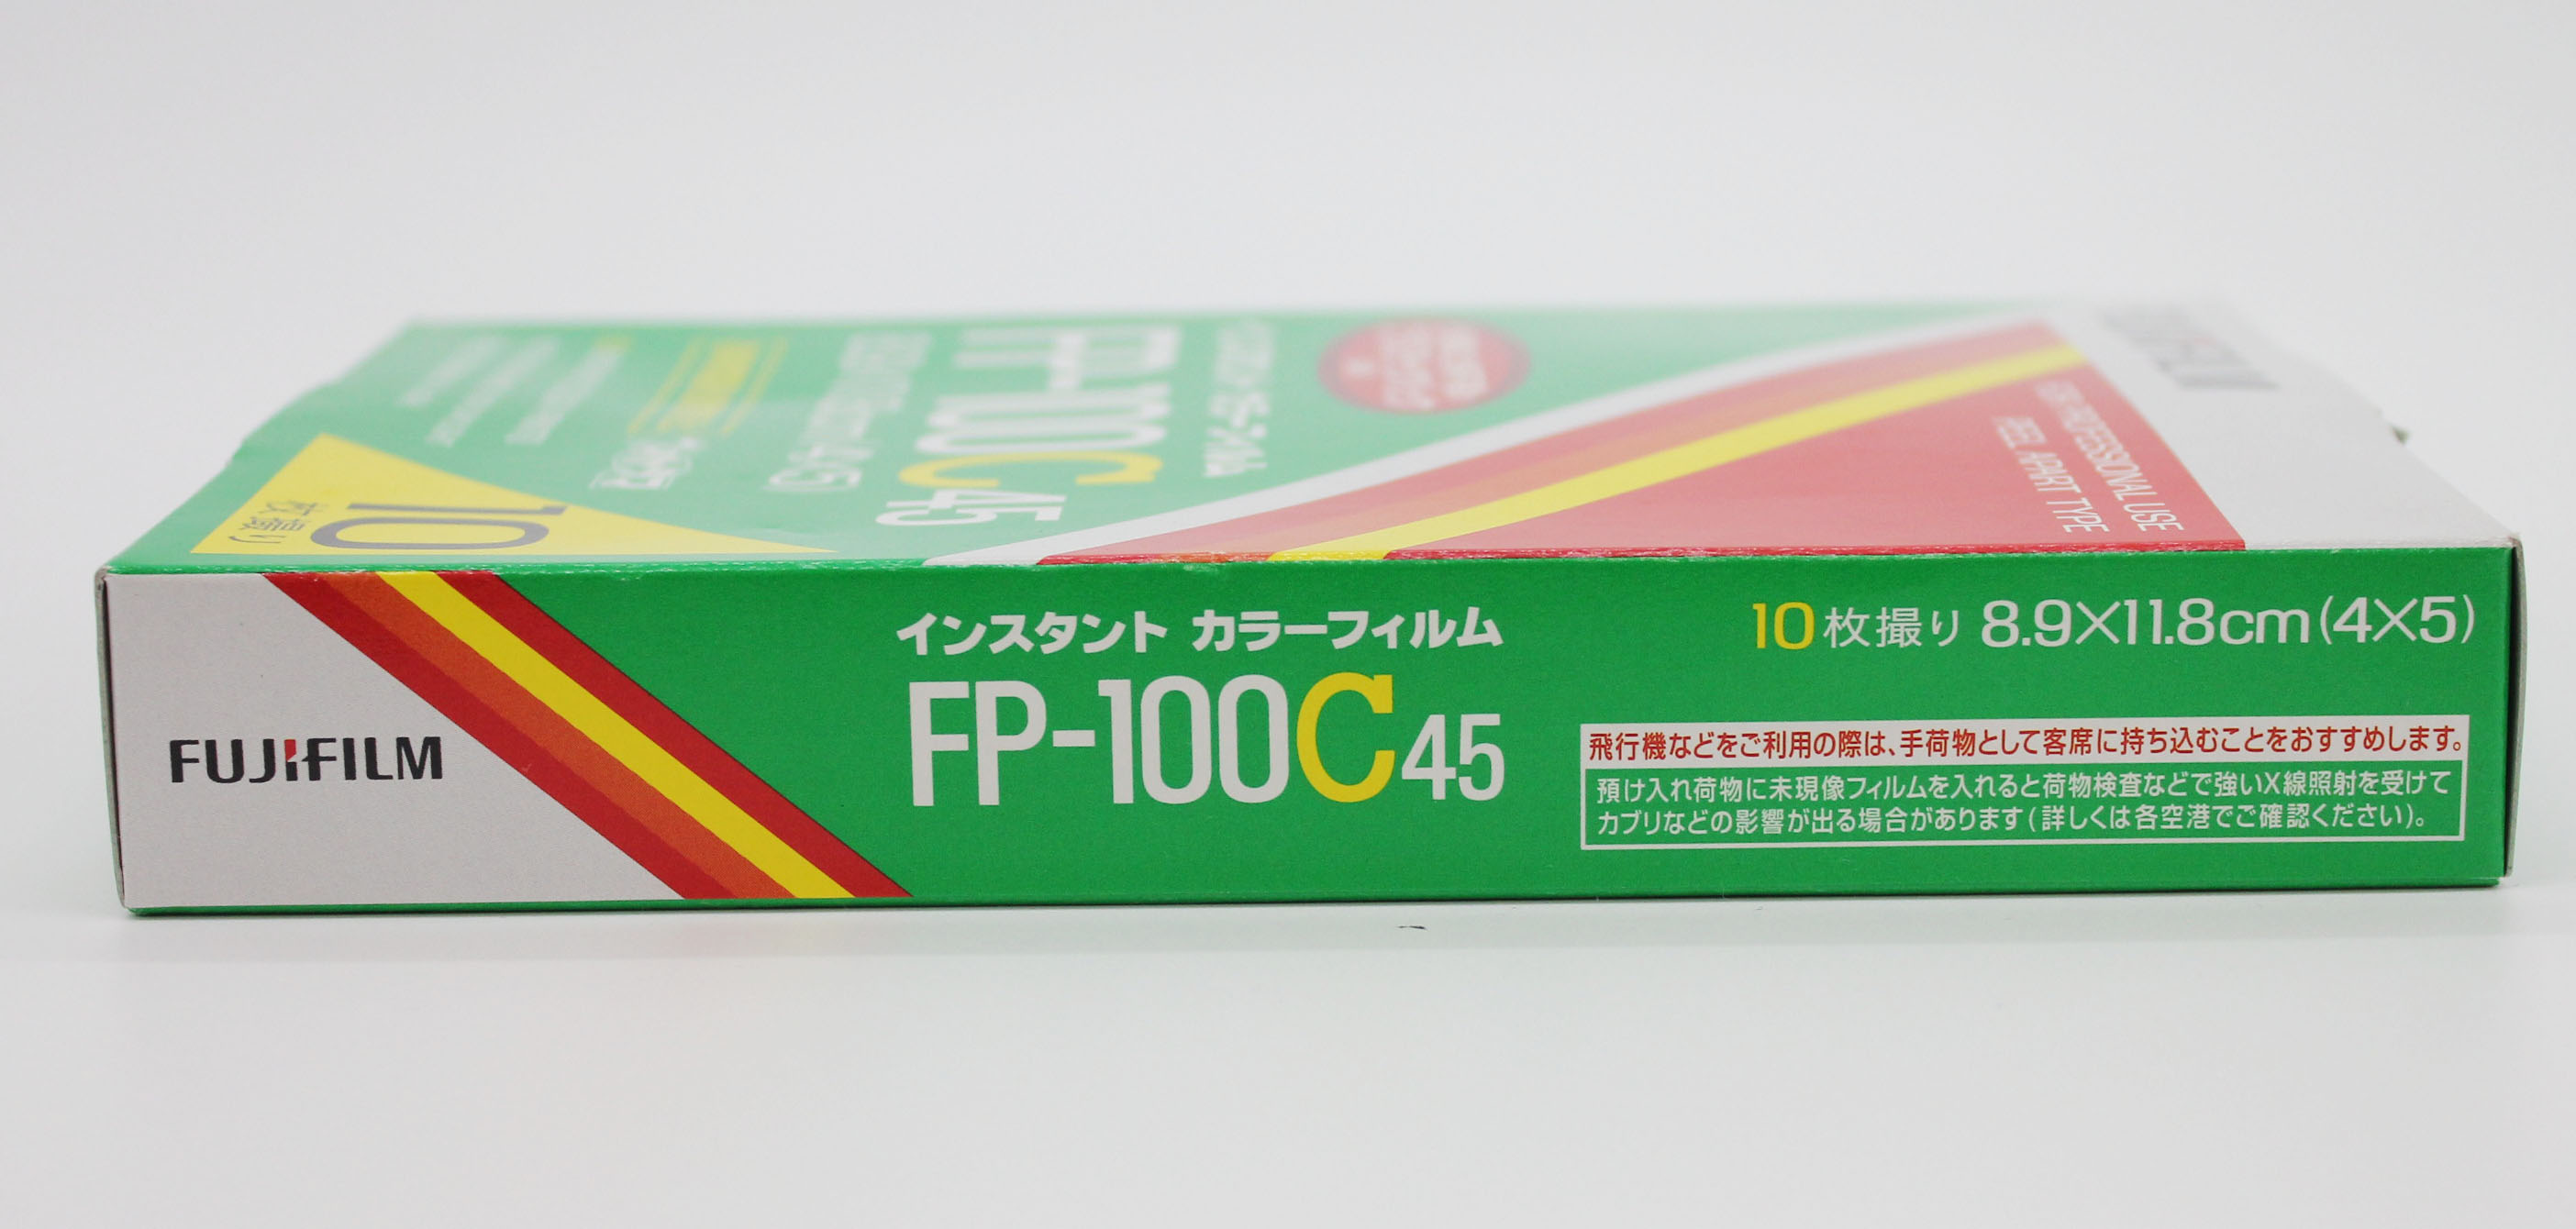  Fuji Fujifilm FP-100C45 4x5 8.9x11.8cm Instant Color Film (EXP 10/2009) Photo 6